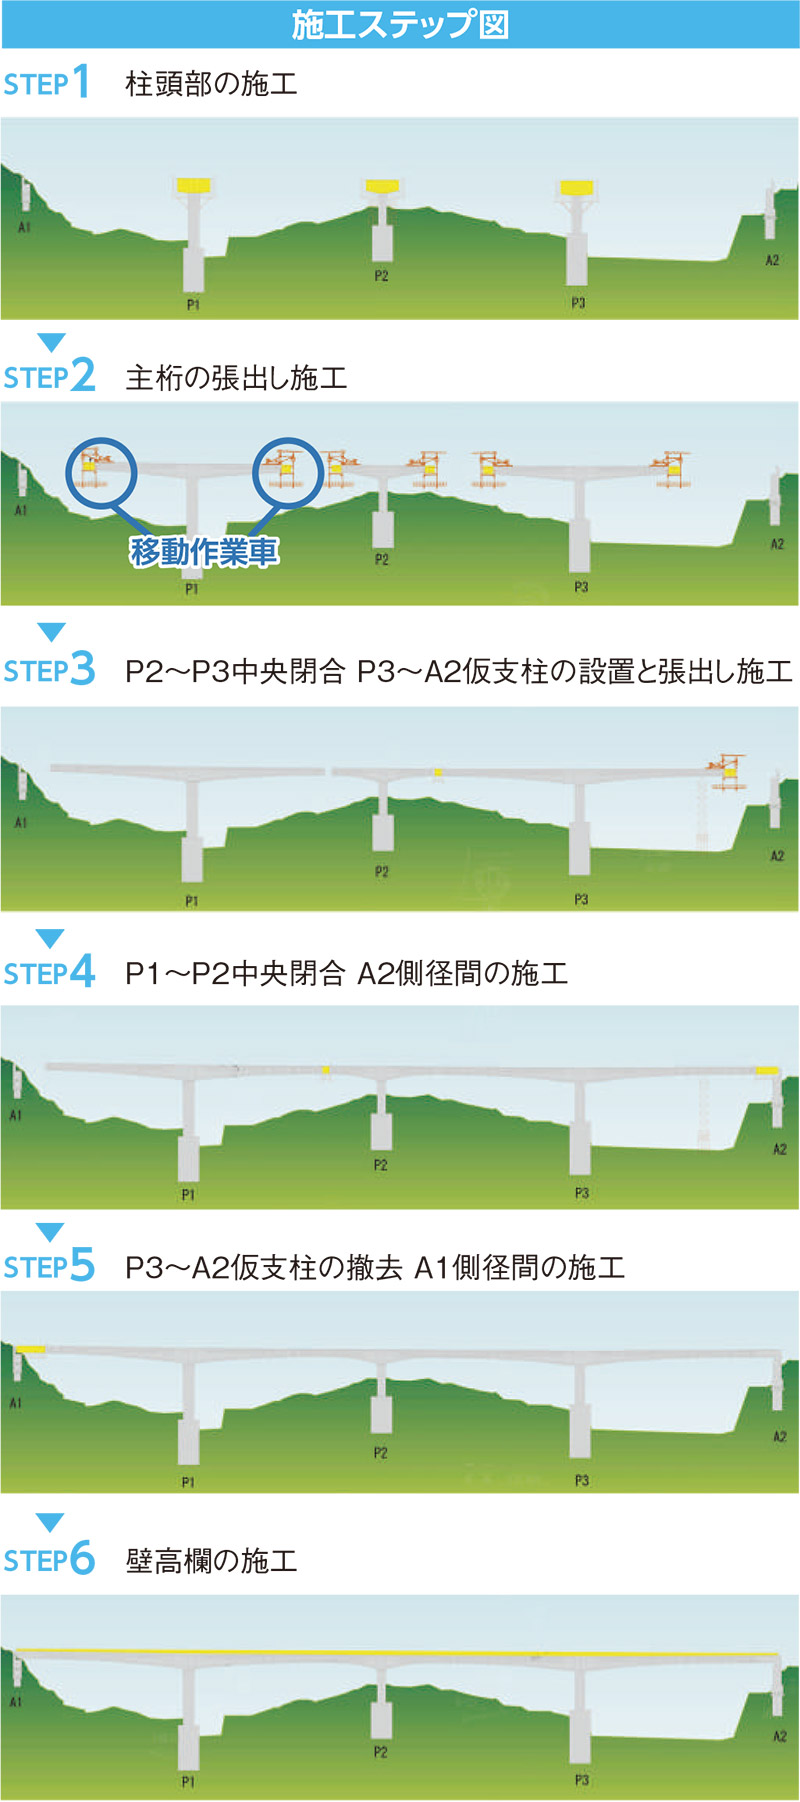 大戸川PC橋梁上部工工事　張出架設工法についてご紹介します